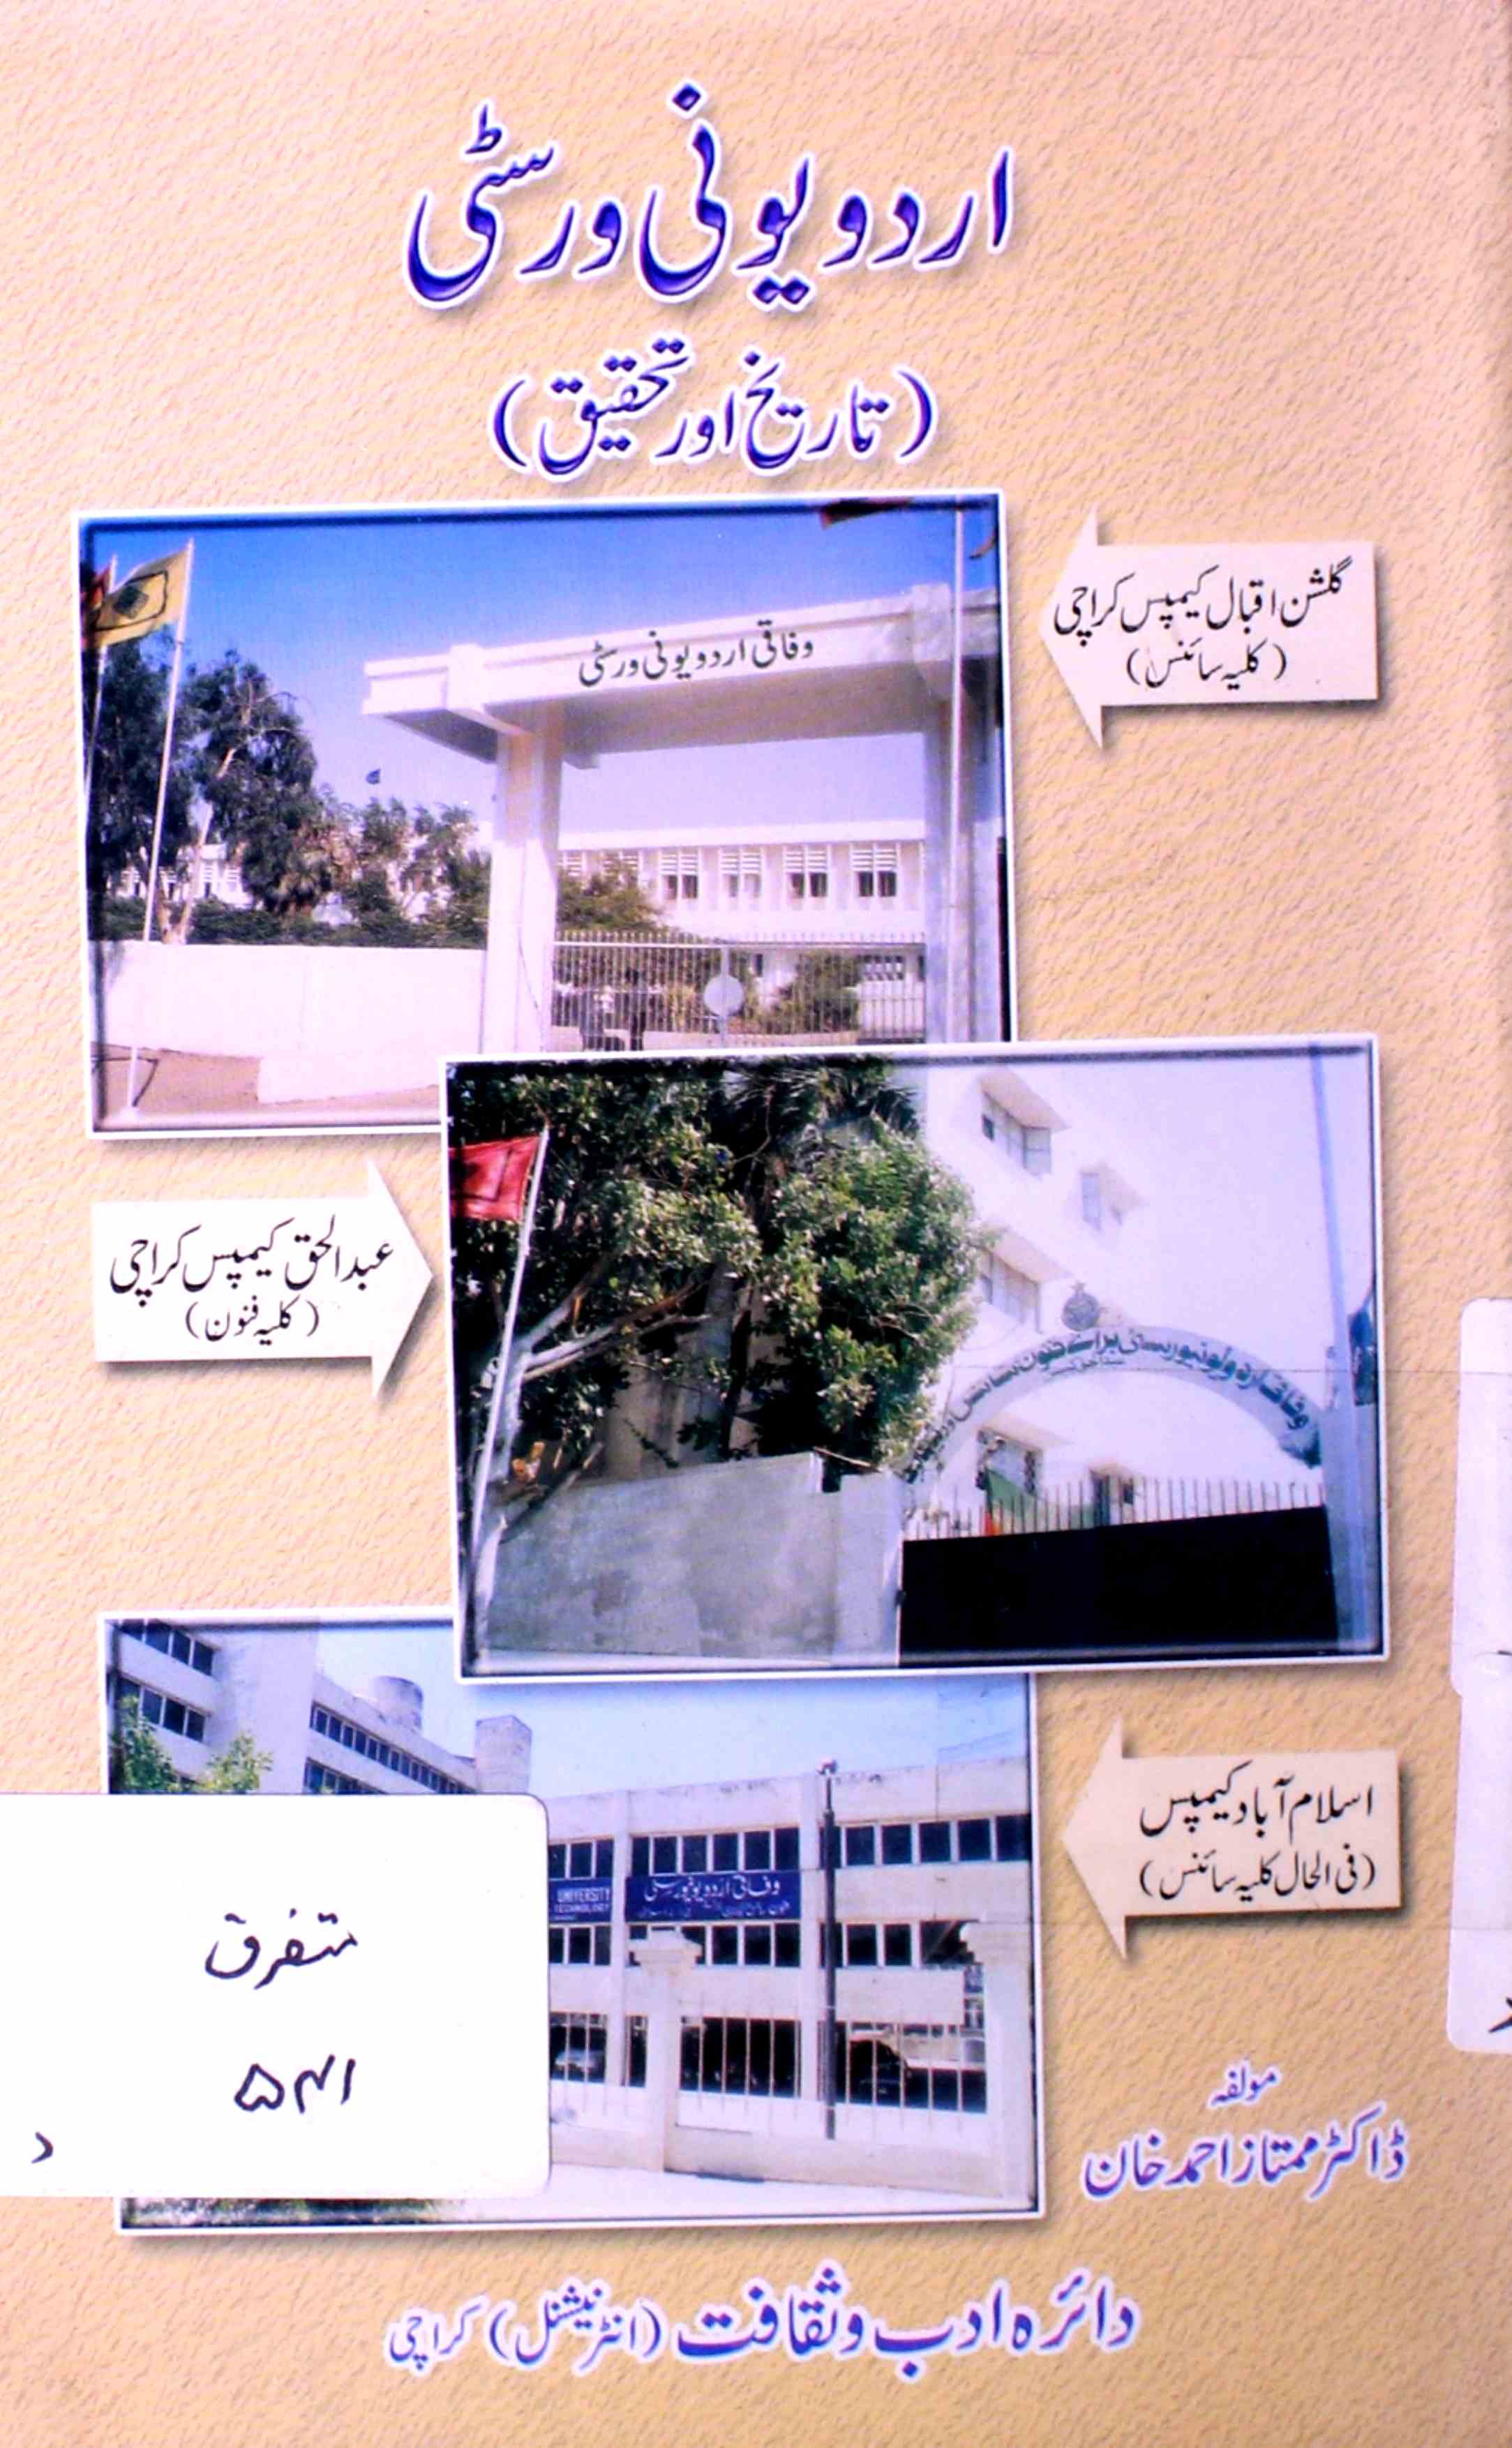 اردو یونی ورسٹی (تاریخ اور تحقیق)